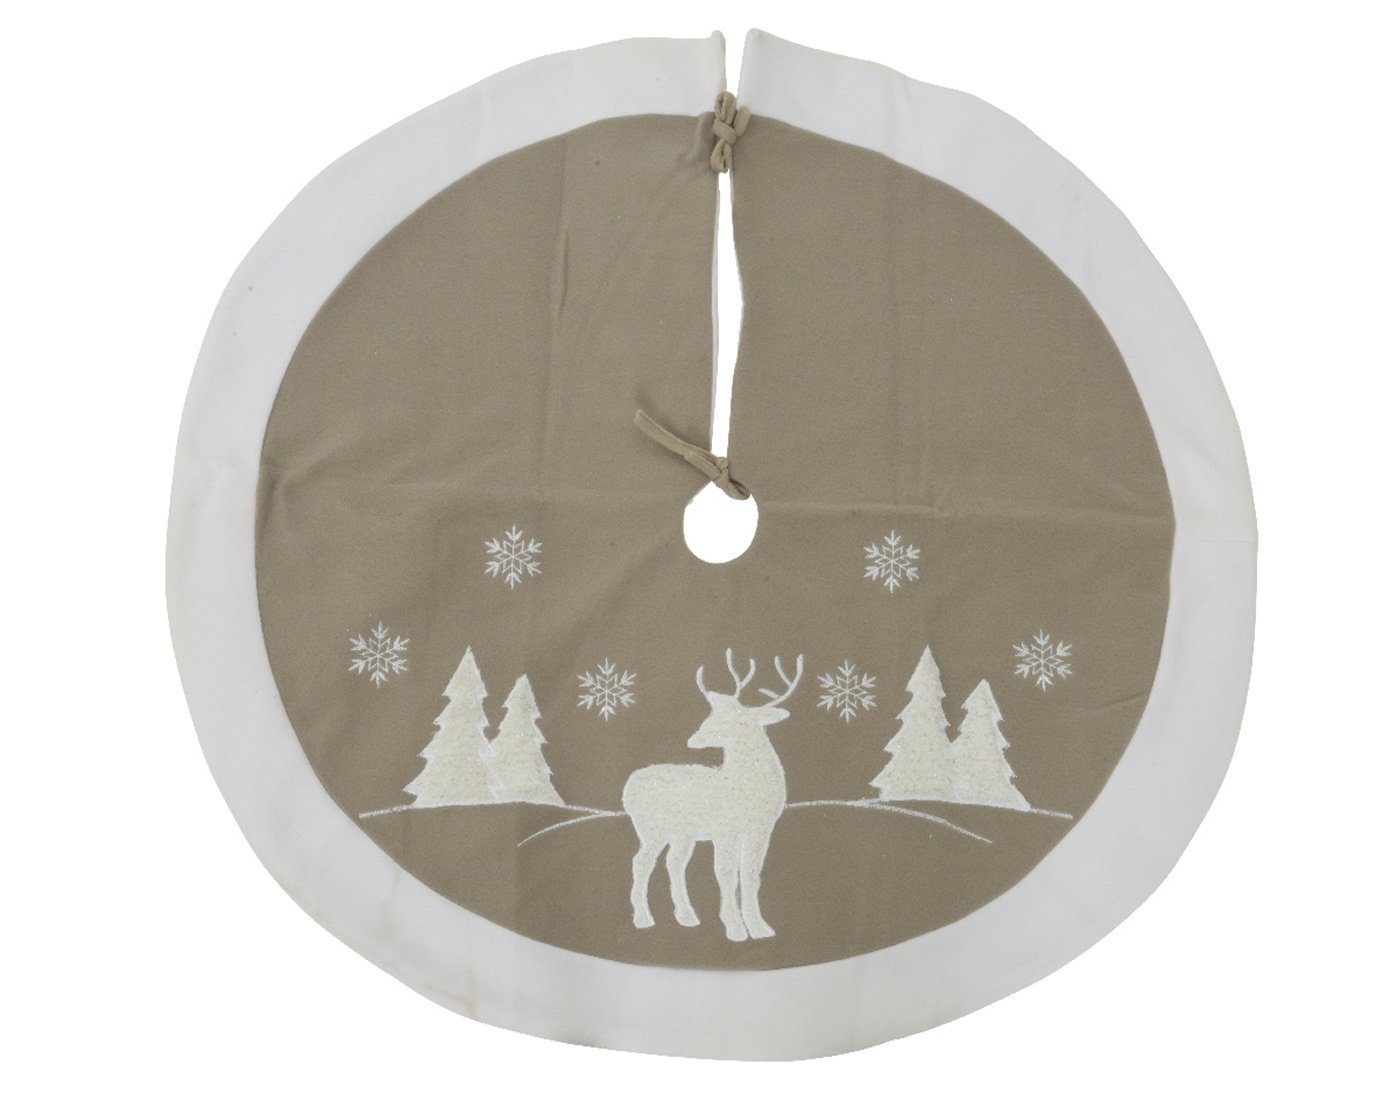 Weihnachtsbaumdecke, decorations mit Decoris season beige / weiß Motiv 90cm Hirsch Weihnachtsbaumdecke natur